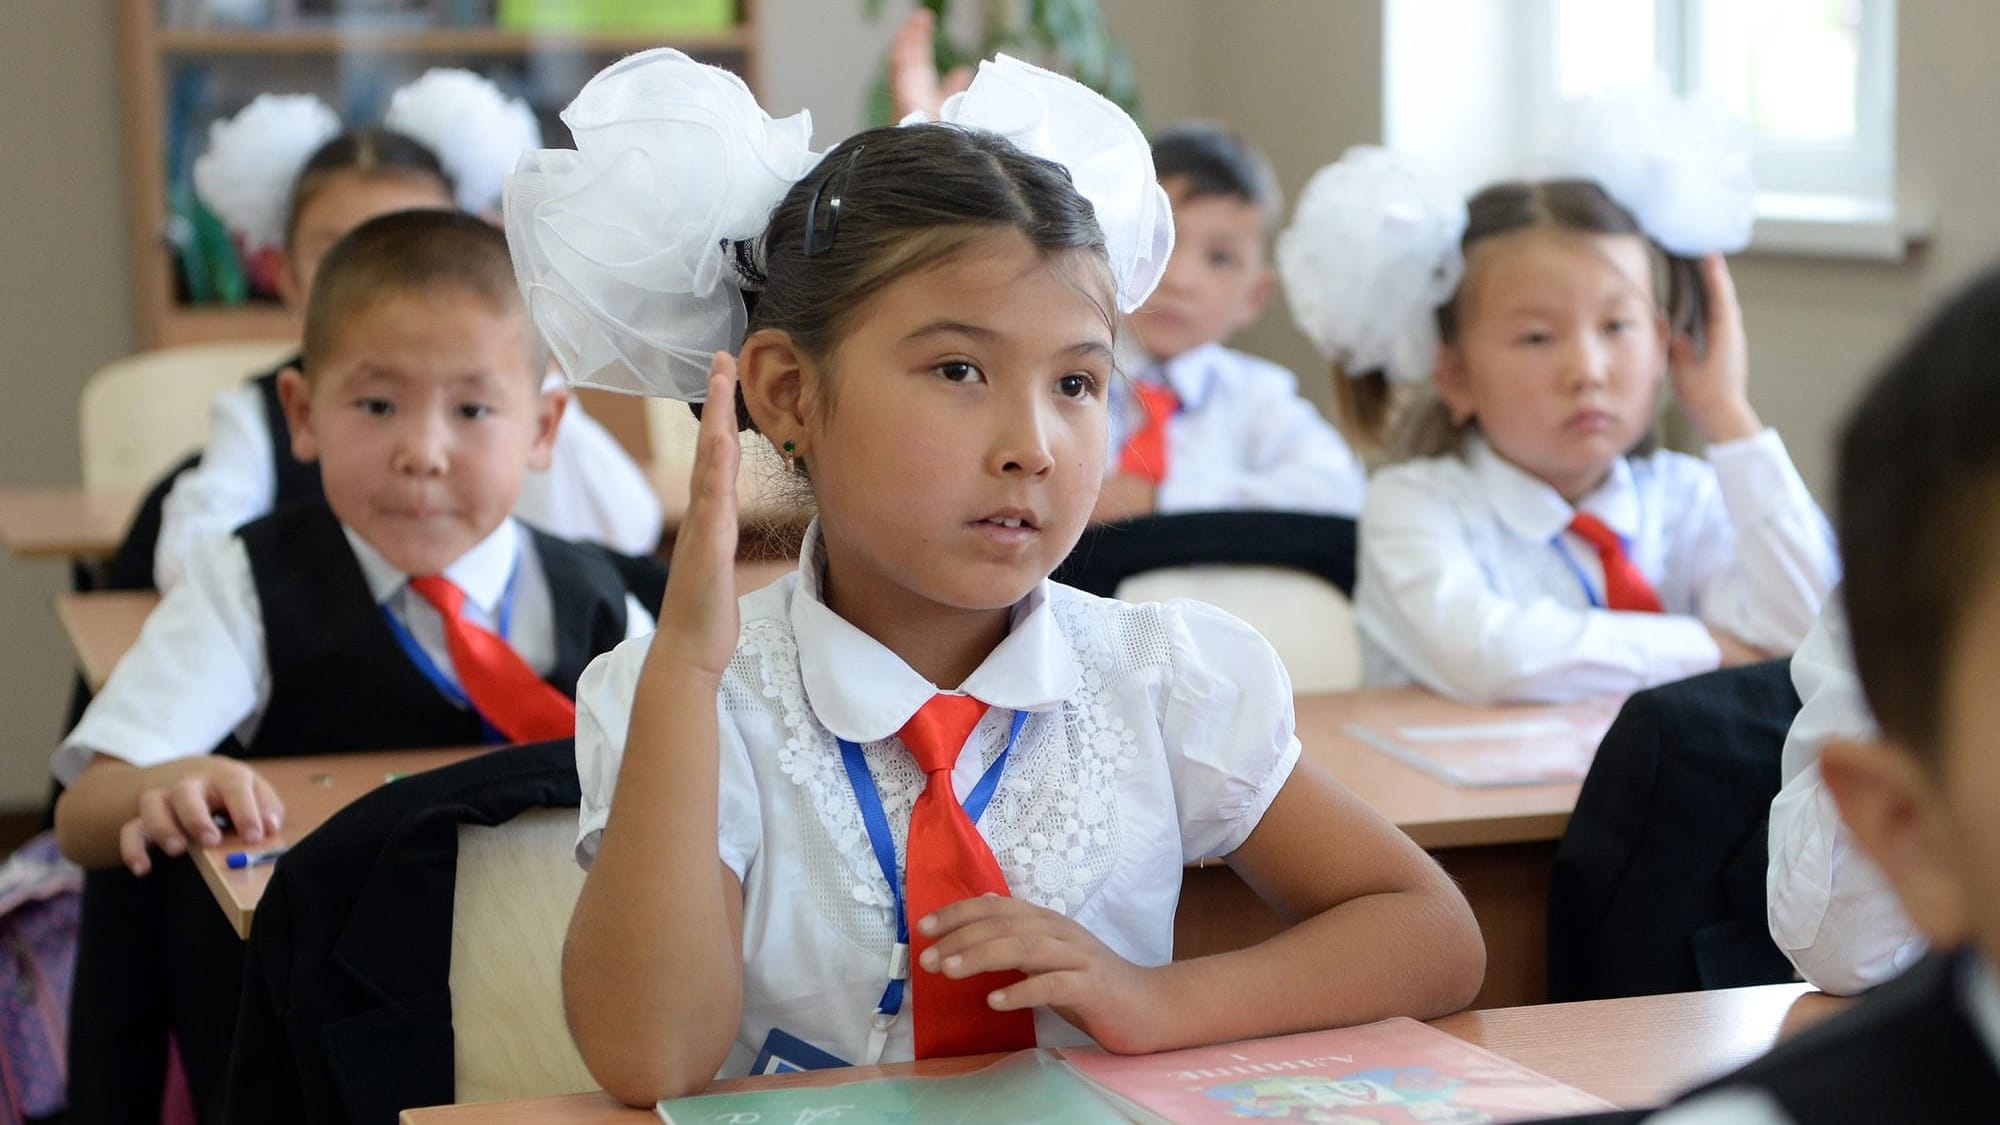 Кыргызстан планирует получить $40 млн от АБР на развитие системы образования